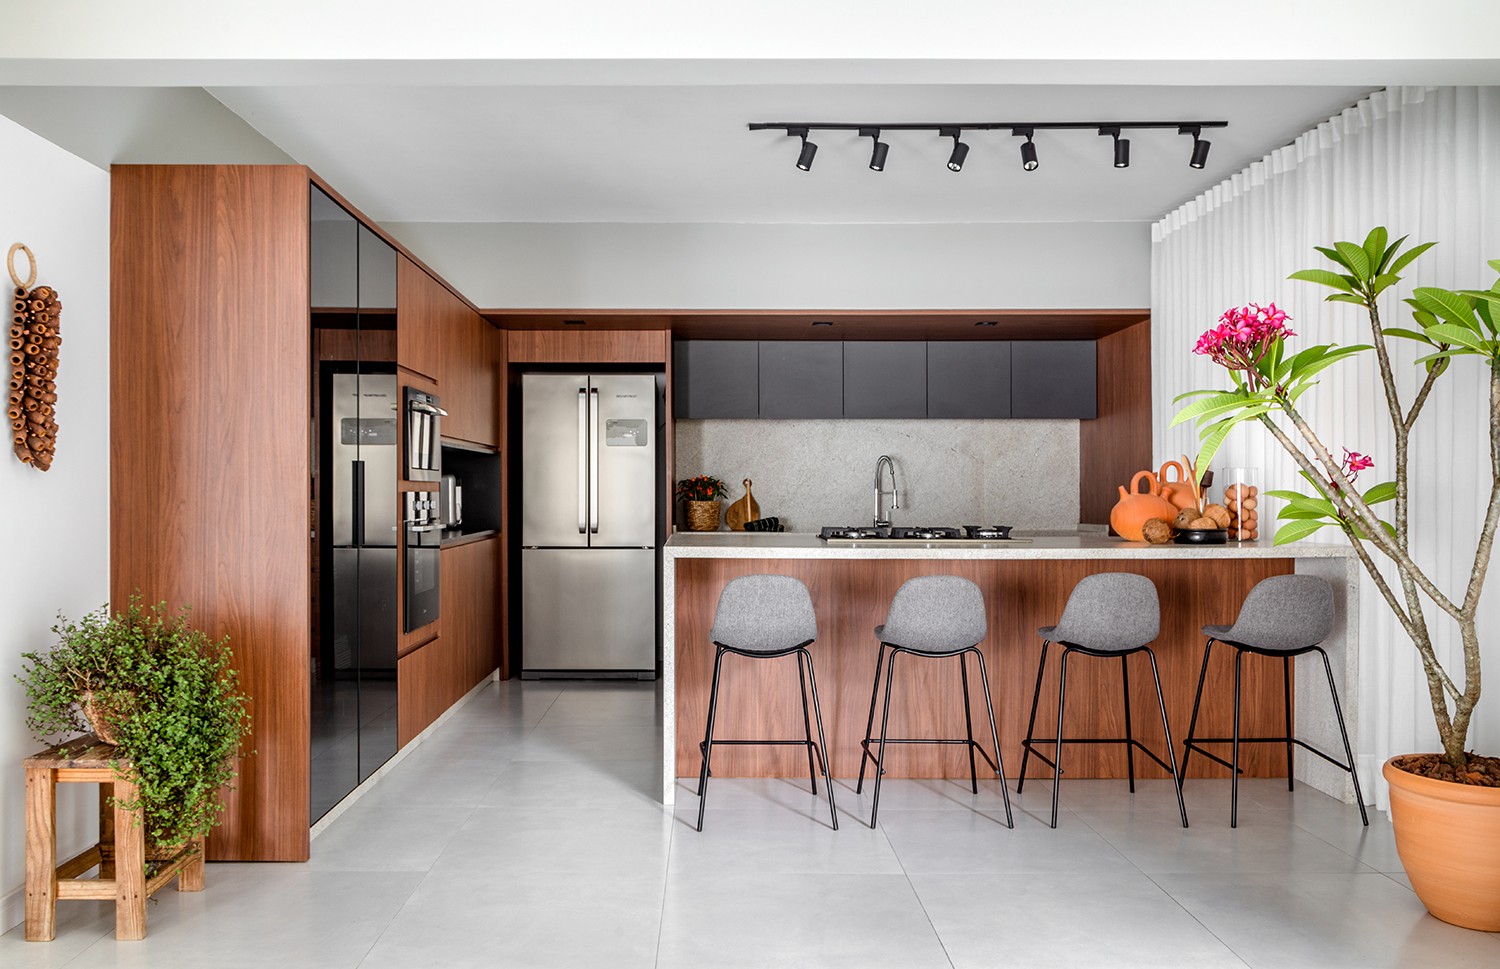 COZINHA | O layout aberto da cozinha permite que os moradores interajam com quem está sentado nas banquetas ou nos outros ambientes (Foto: Fábio Jr. Severo / Divulgação)